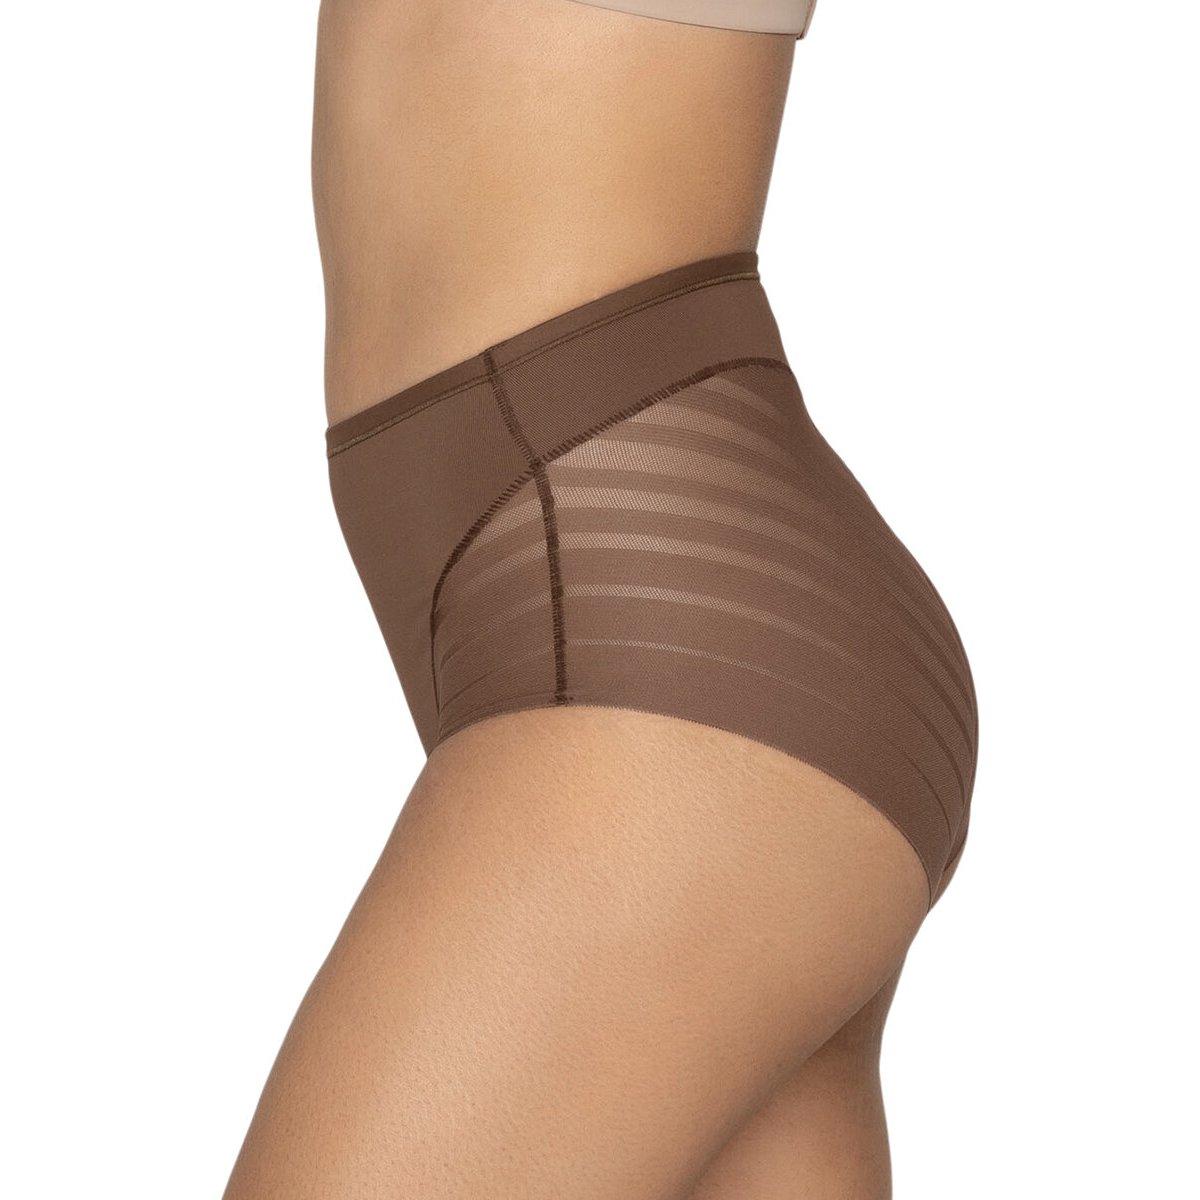 Panty faja clásico con control moderado de abdomen y bandas en tul. LEONISA